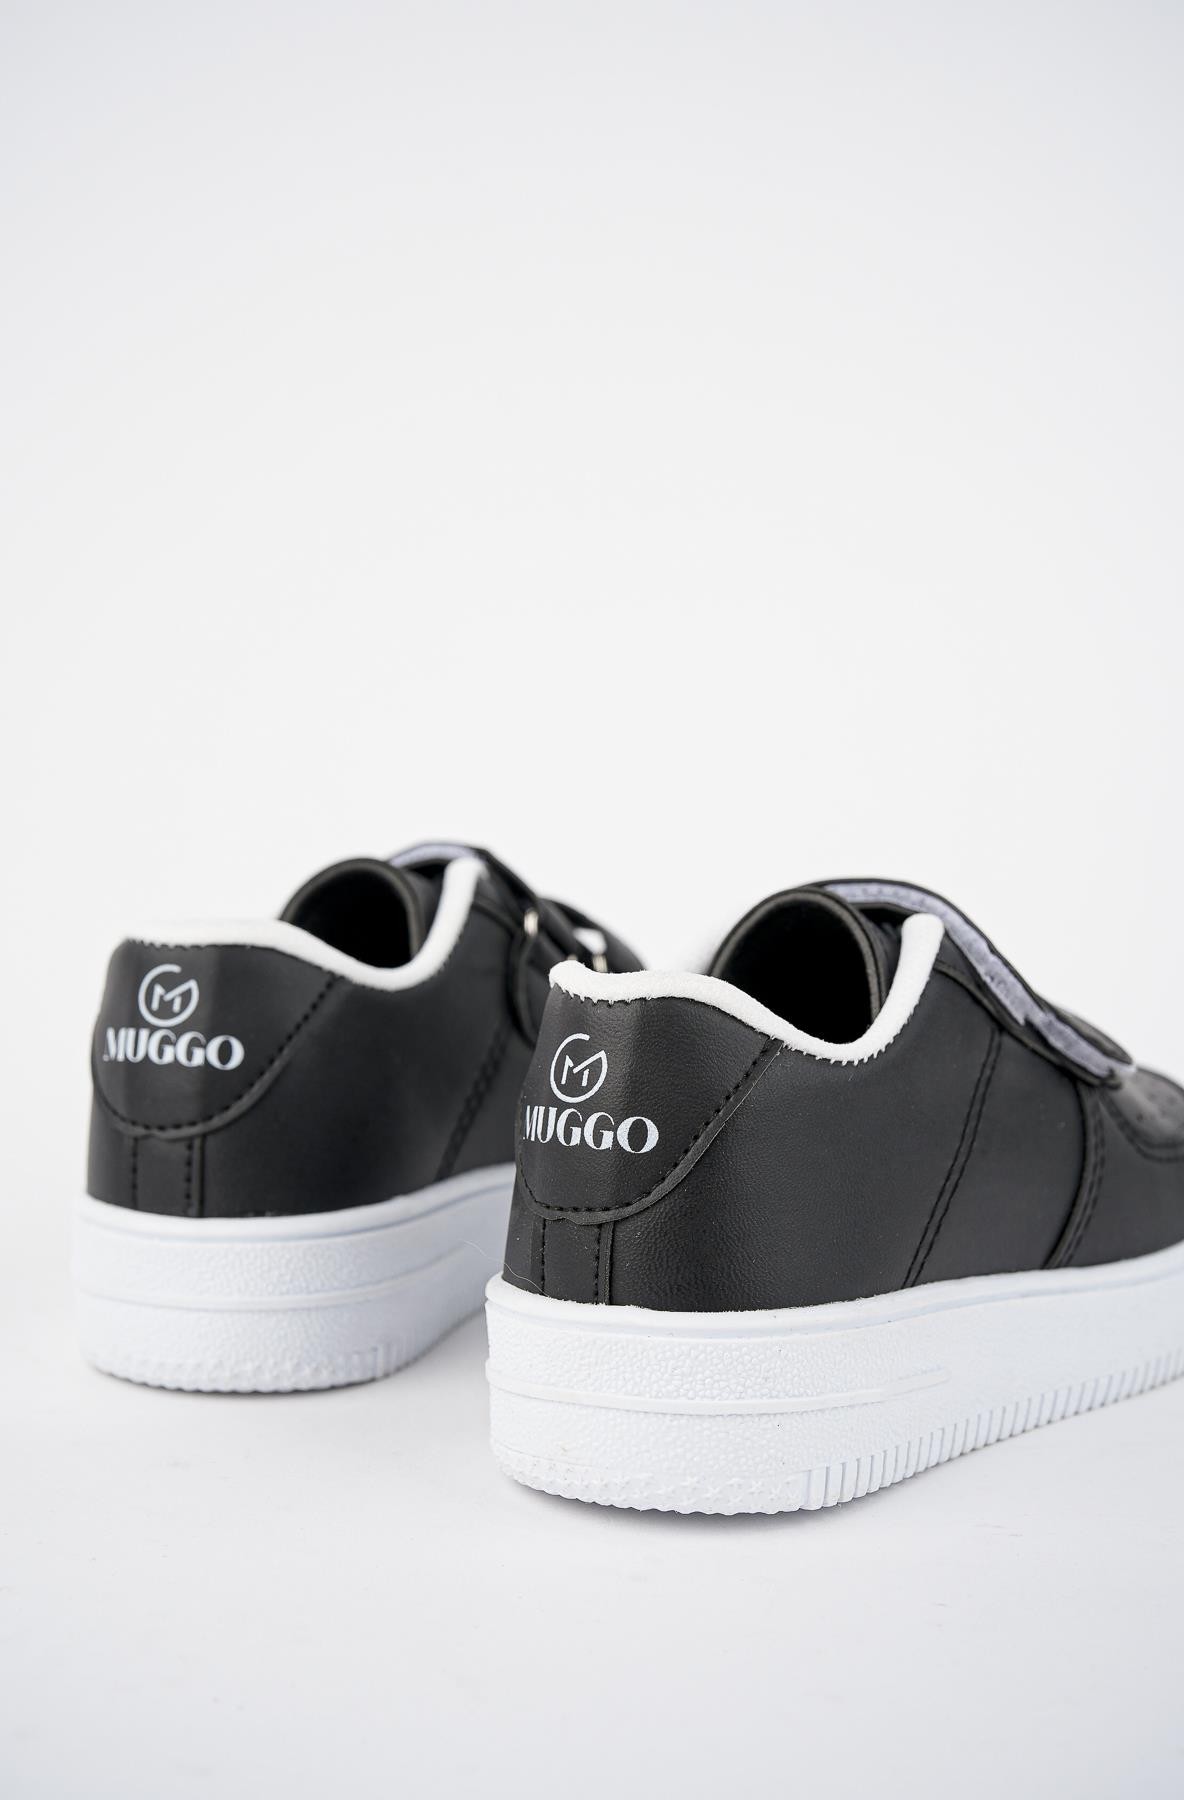 Muggo Alvin Garantili Unisex Çocuk Cırtlı Rahat Günlük Sneaker Spor Ayakkabı